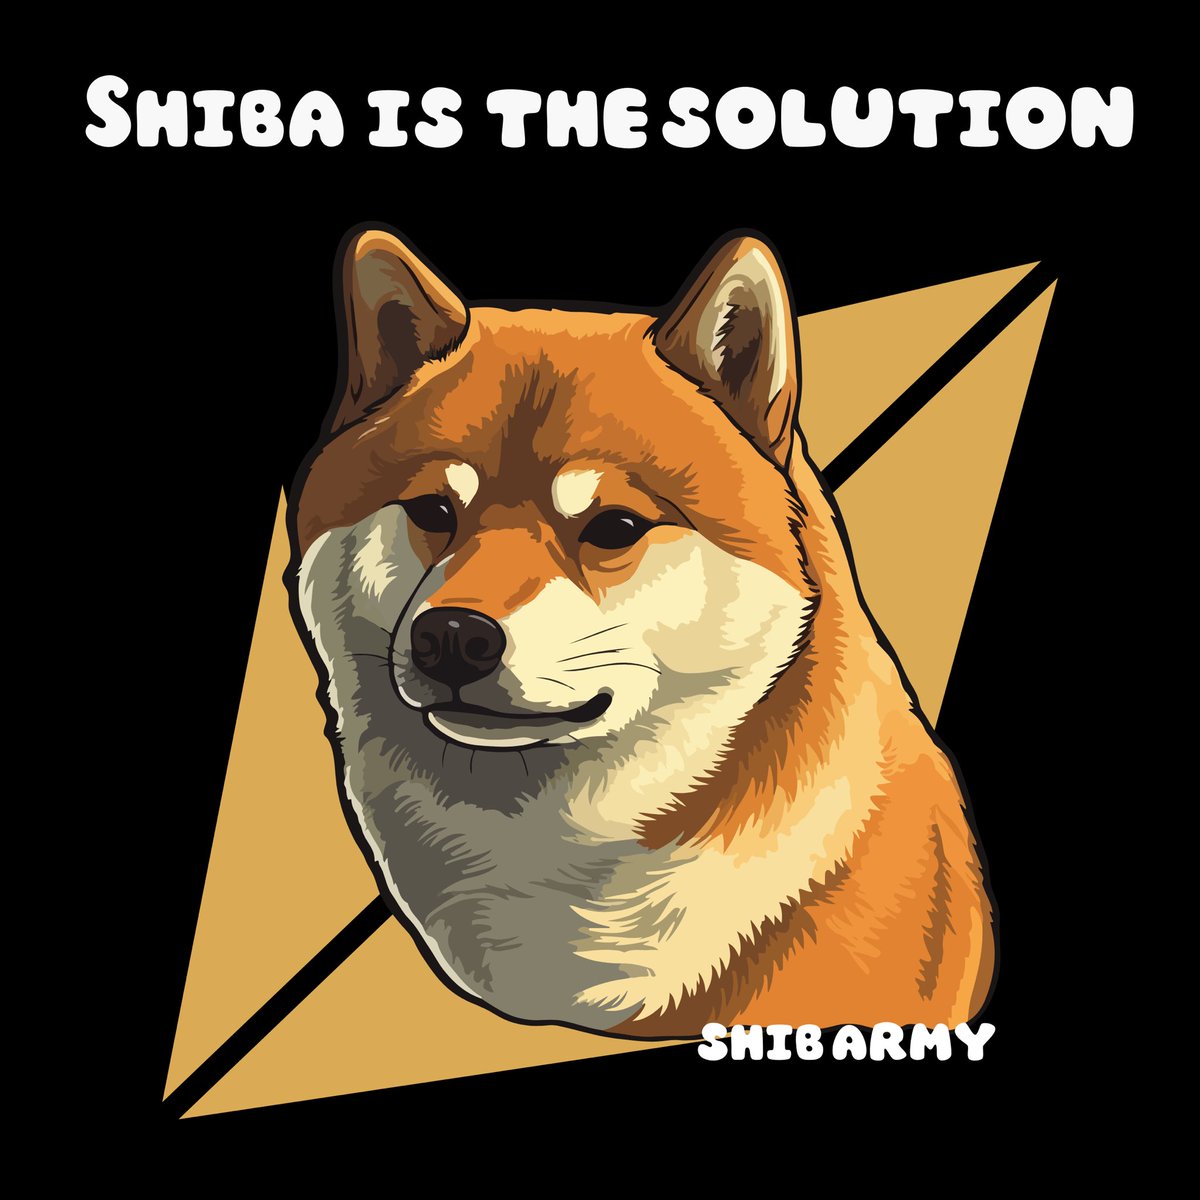 #shib is the solution

$shib #shibaArmy #shibaarab_army